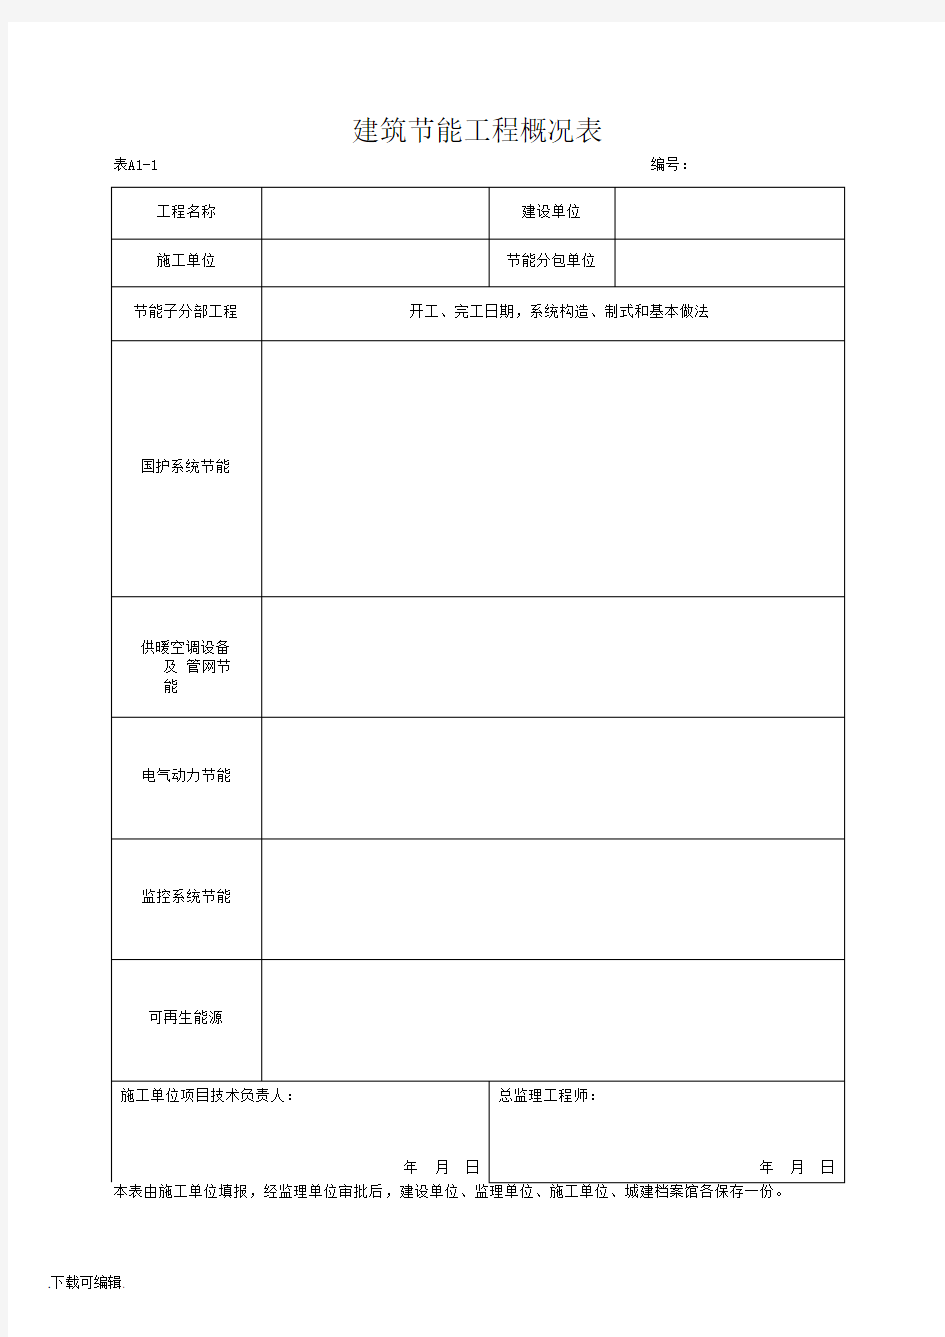 湖北省建筑工程施工统一用表(2016年版)上